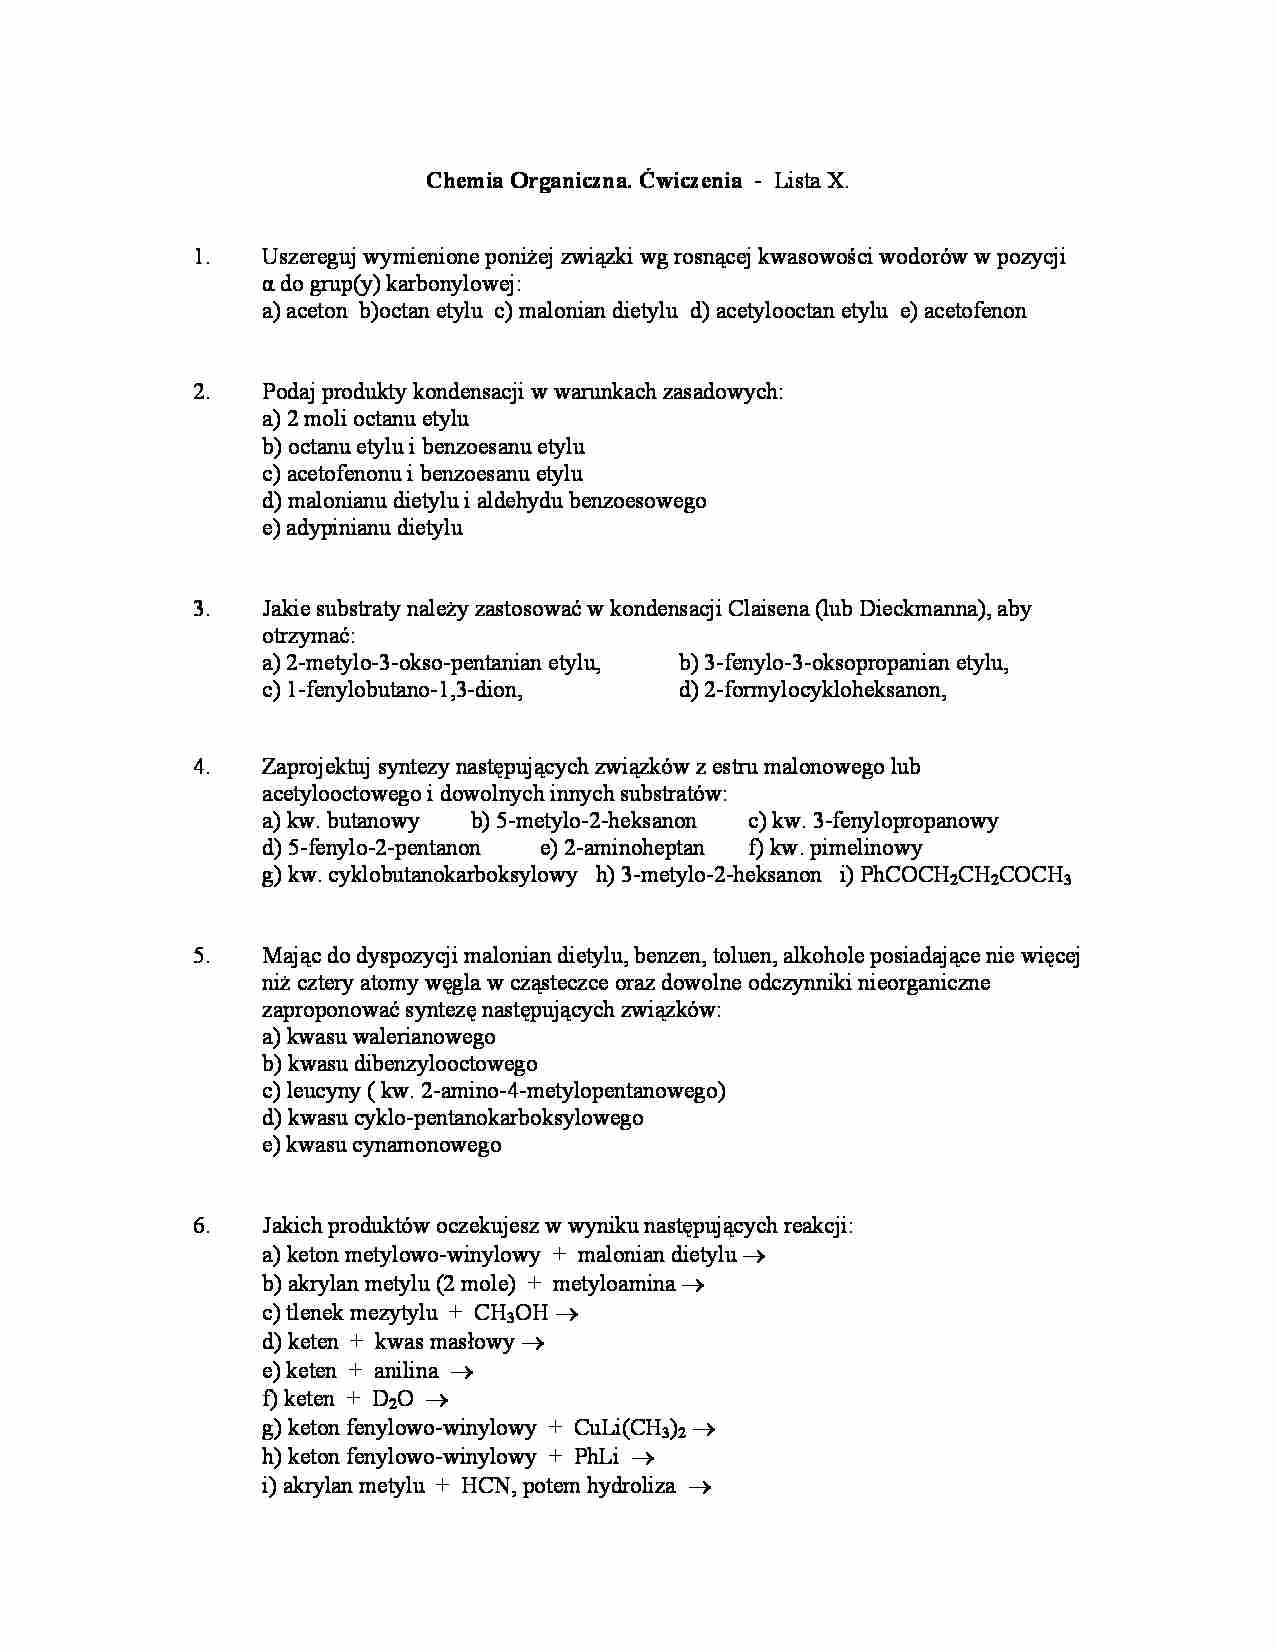 Chemia organiczna - ćwiczenia, lista X - strona 1